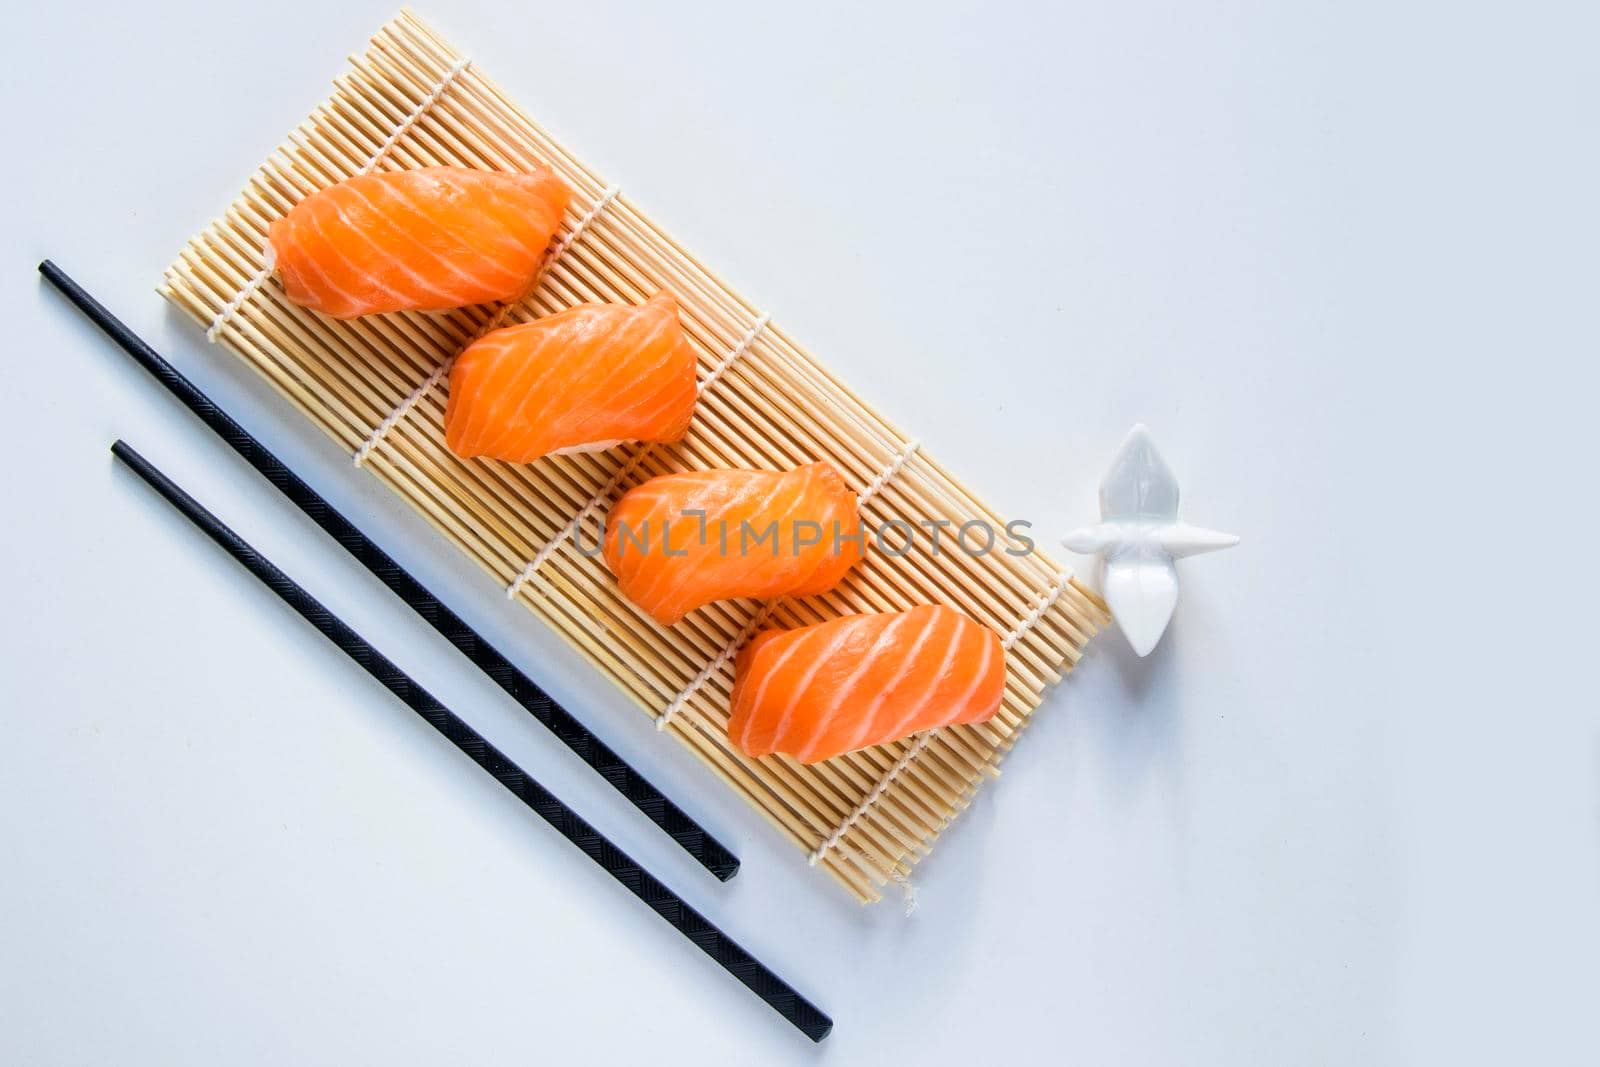 Salmon fish nigiri set on the white background, nigiri sushi